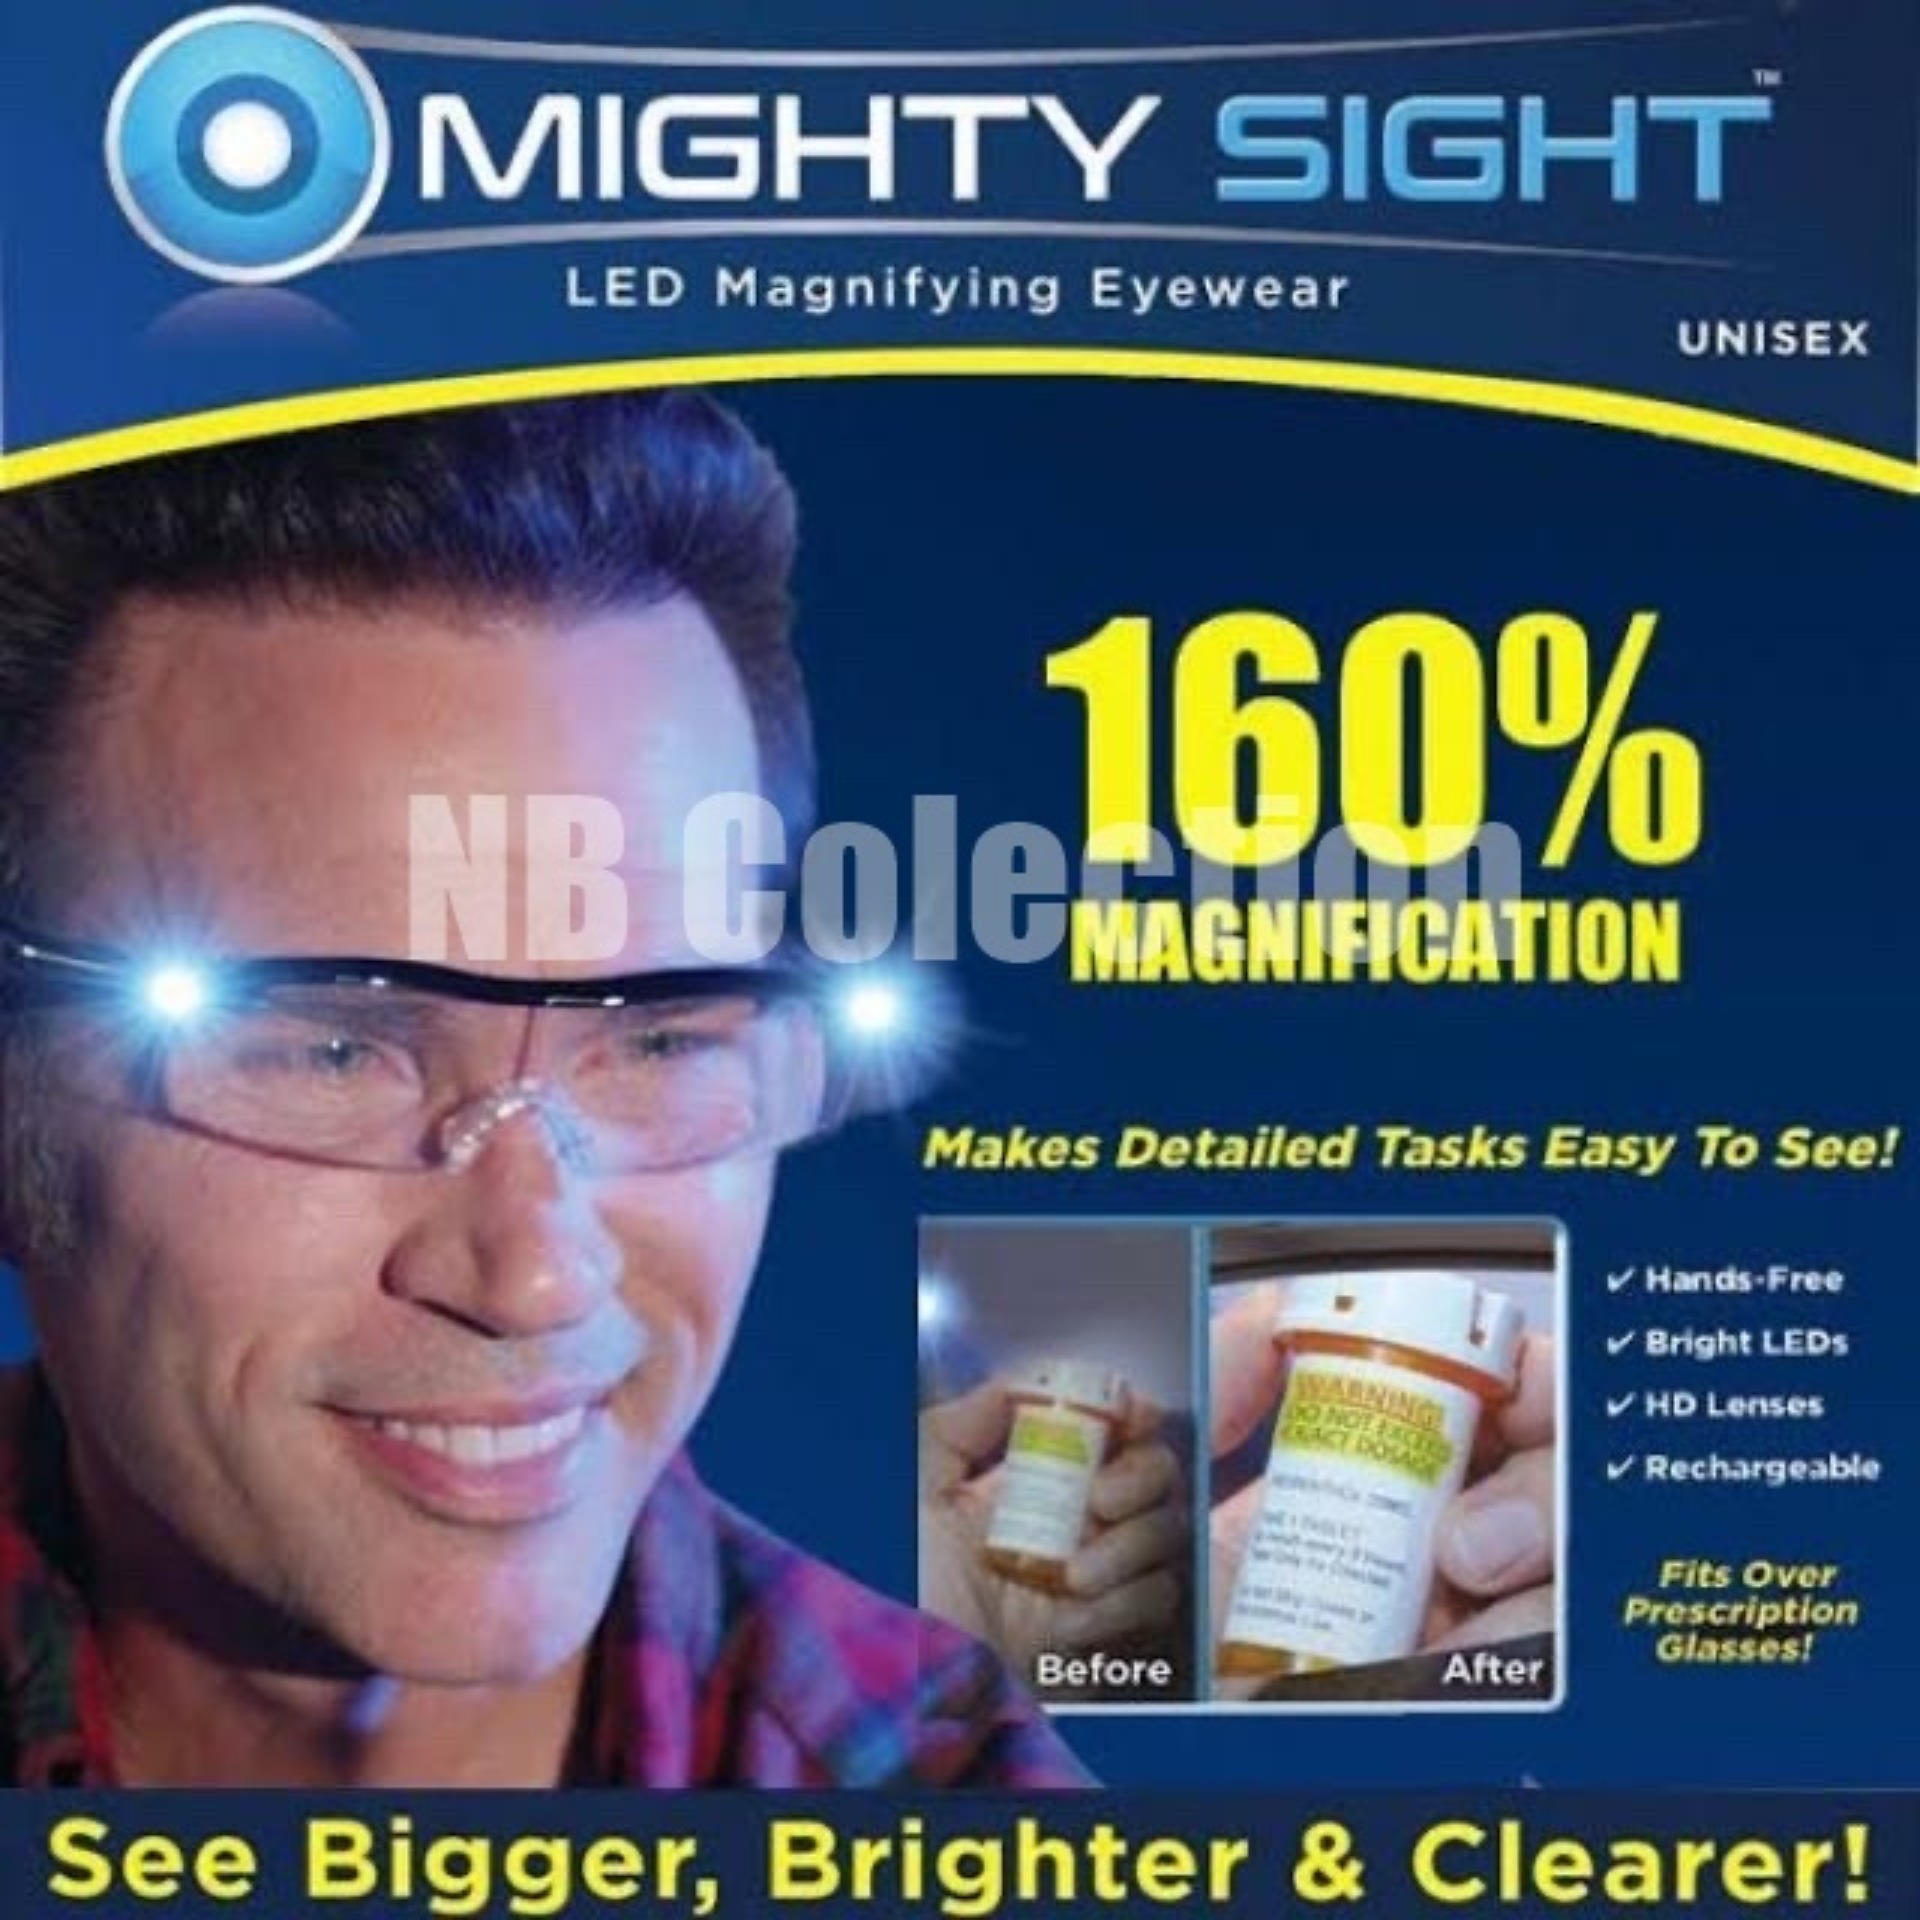 Mighty sight glasses แว่นขยายไร้มือจับ 160% LED